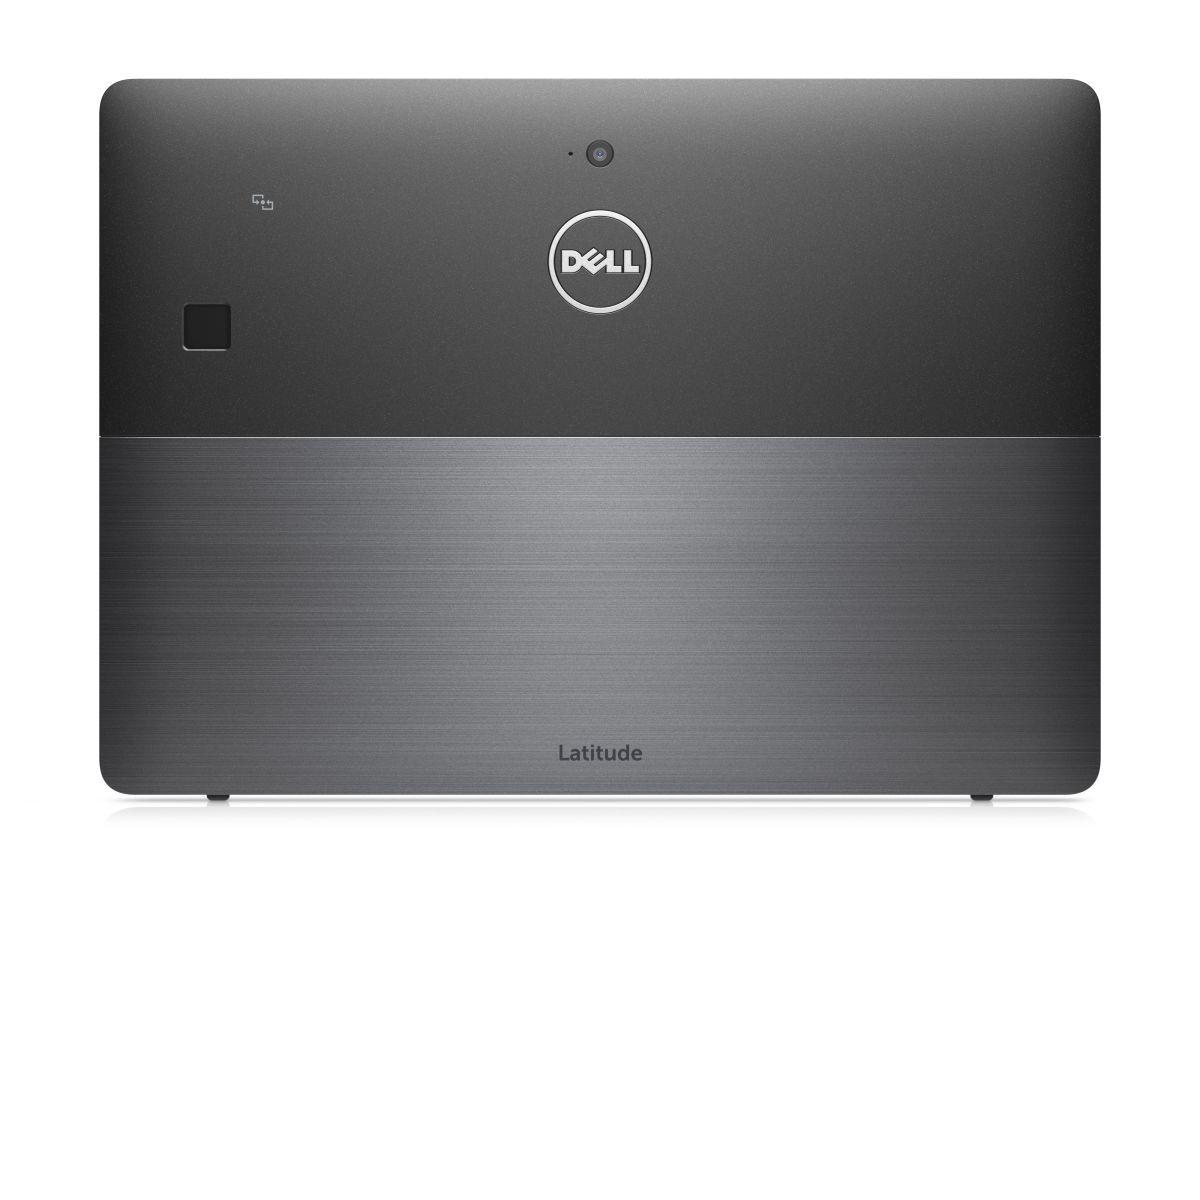 DELL Latitude 5290 2-in-1 - N003L5290122IN1EMEA laptop specifications